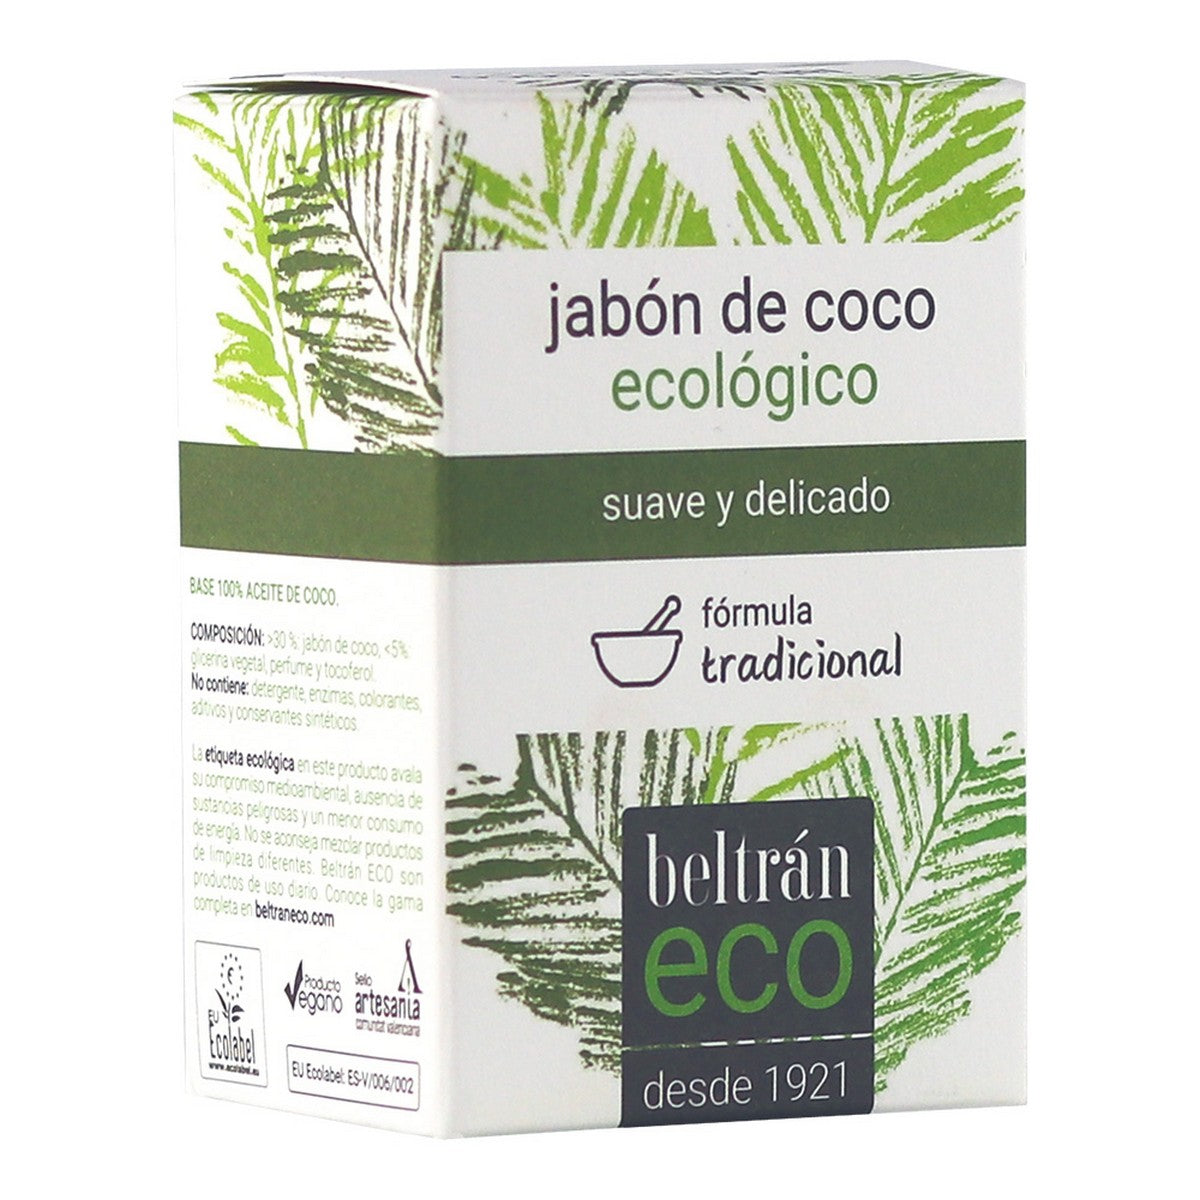 Mydlanowe ciasto Jabones Beltrán ekologiczny olej kokosowy 240 g